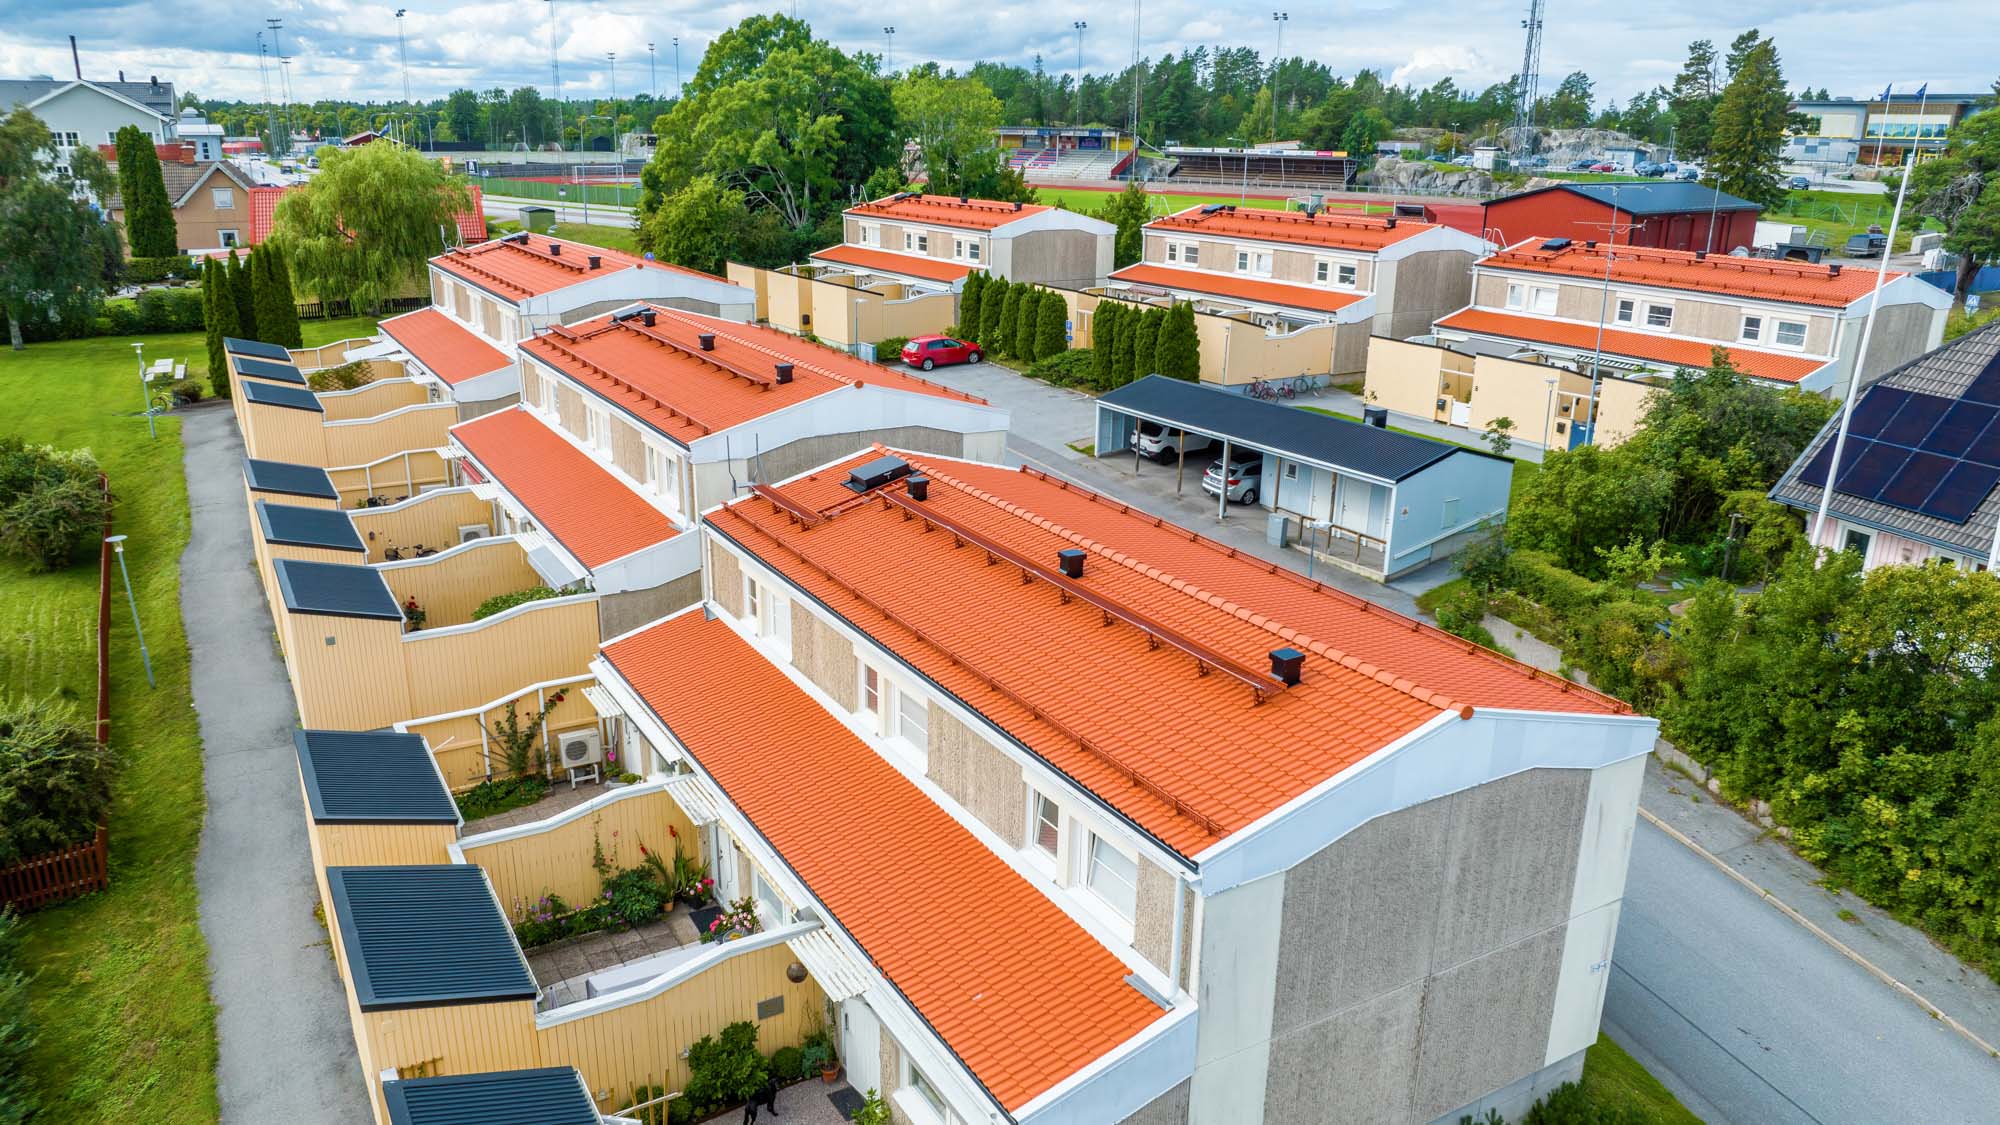 Bostadsrättsförening med nya orangea takpannor